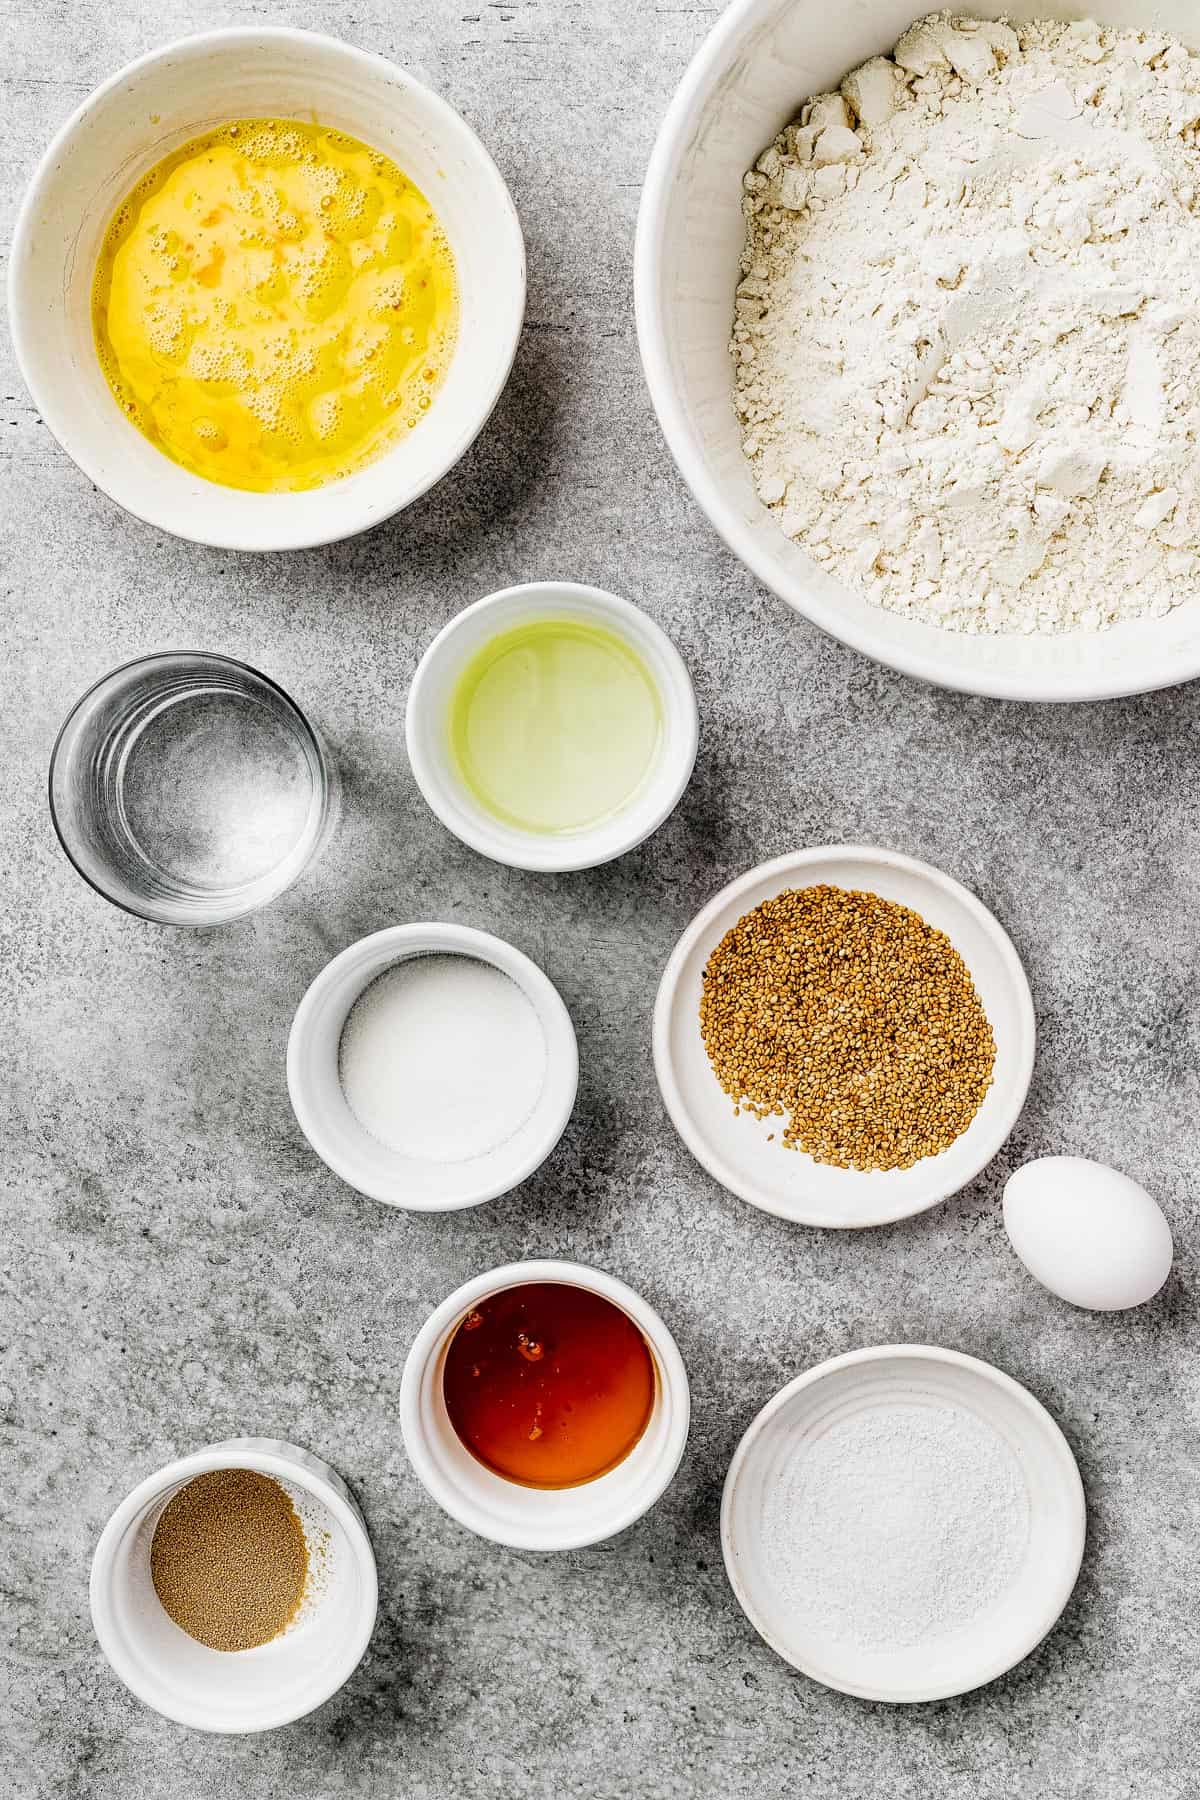 From top left: Beaten eggs, flour, water, oil, sugar, sesame seeds, yeast, honey, salt.